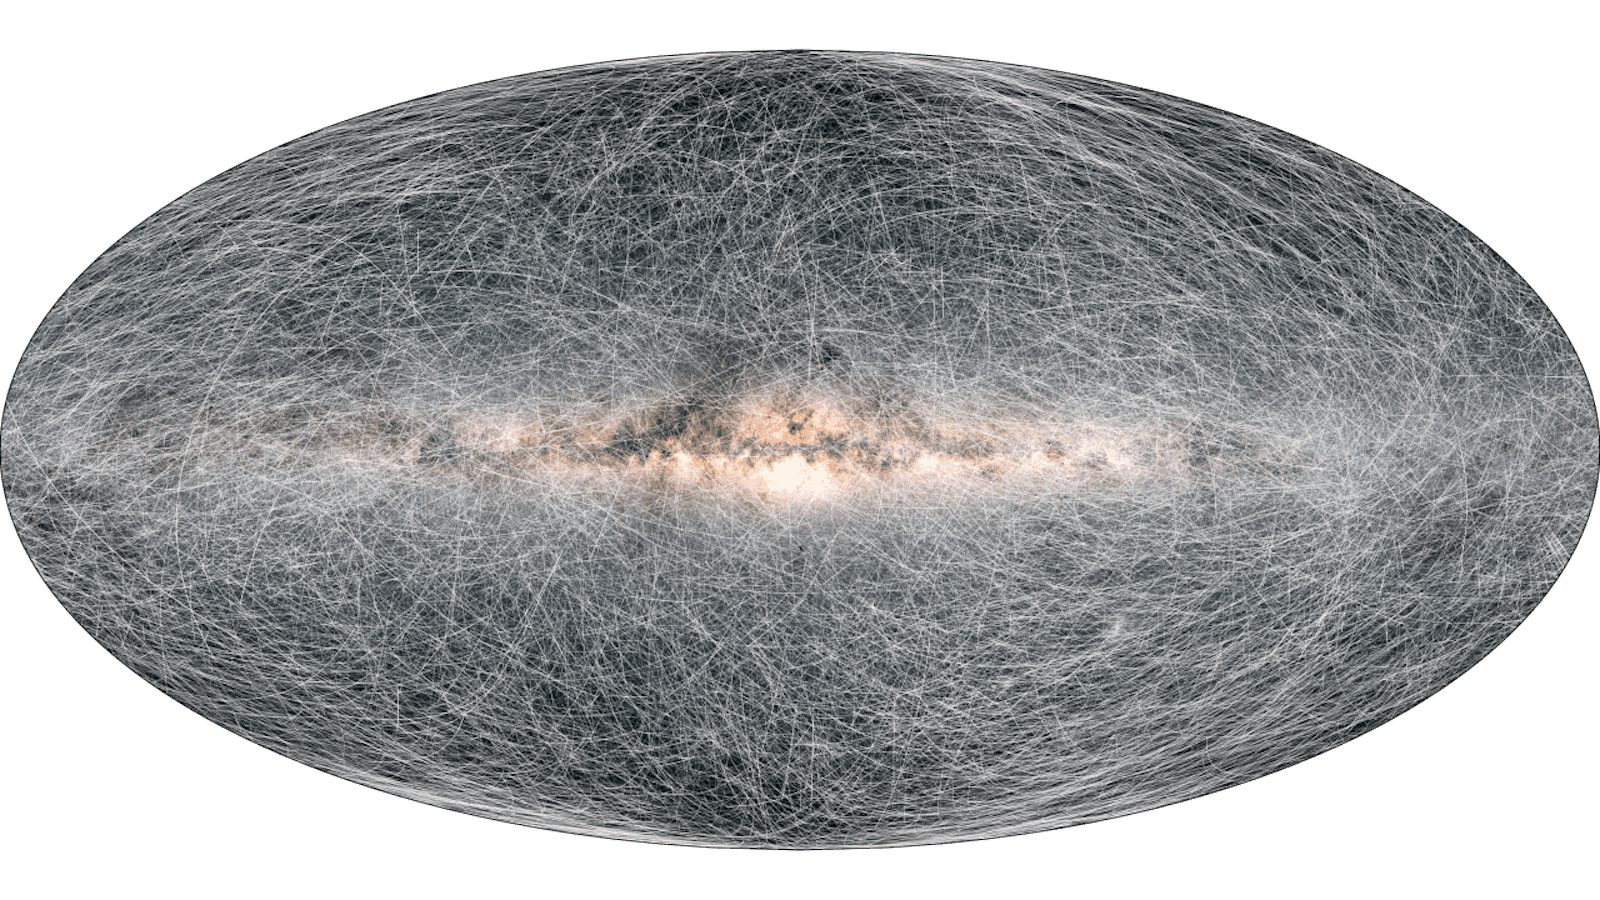 Gaia's stellar motion for the next 400-thousand years
Copyright: ESA/Gaia/DPAC; CC BY-SA 3.0 IGO. Acknowledgement: A. Brown, S. Jordan, T. Roegiers, X. Luria, E. Masana, T. Prusti and A. Moitinho